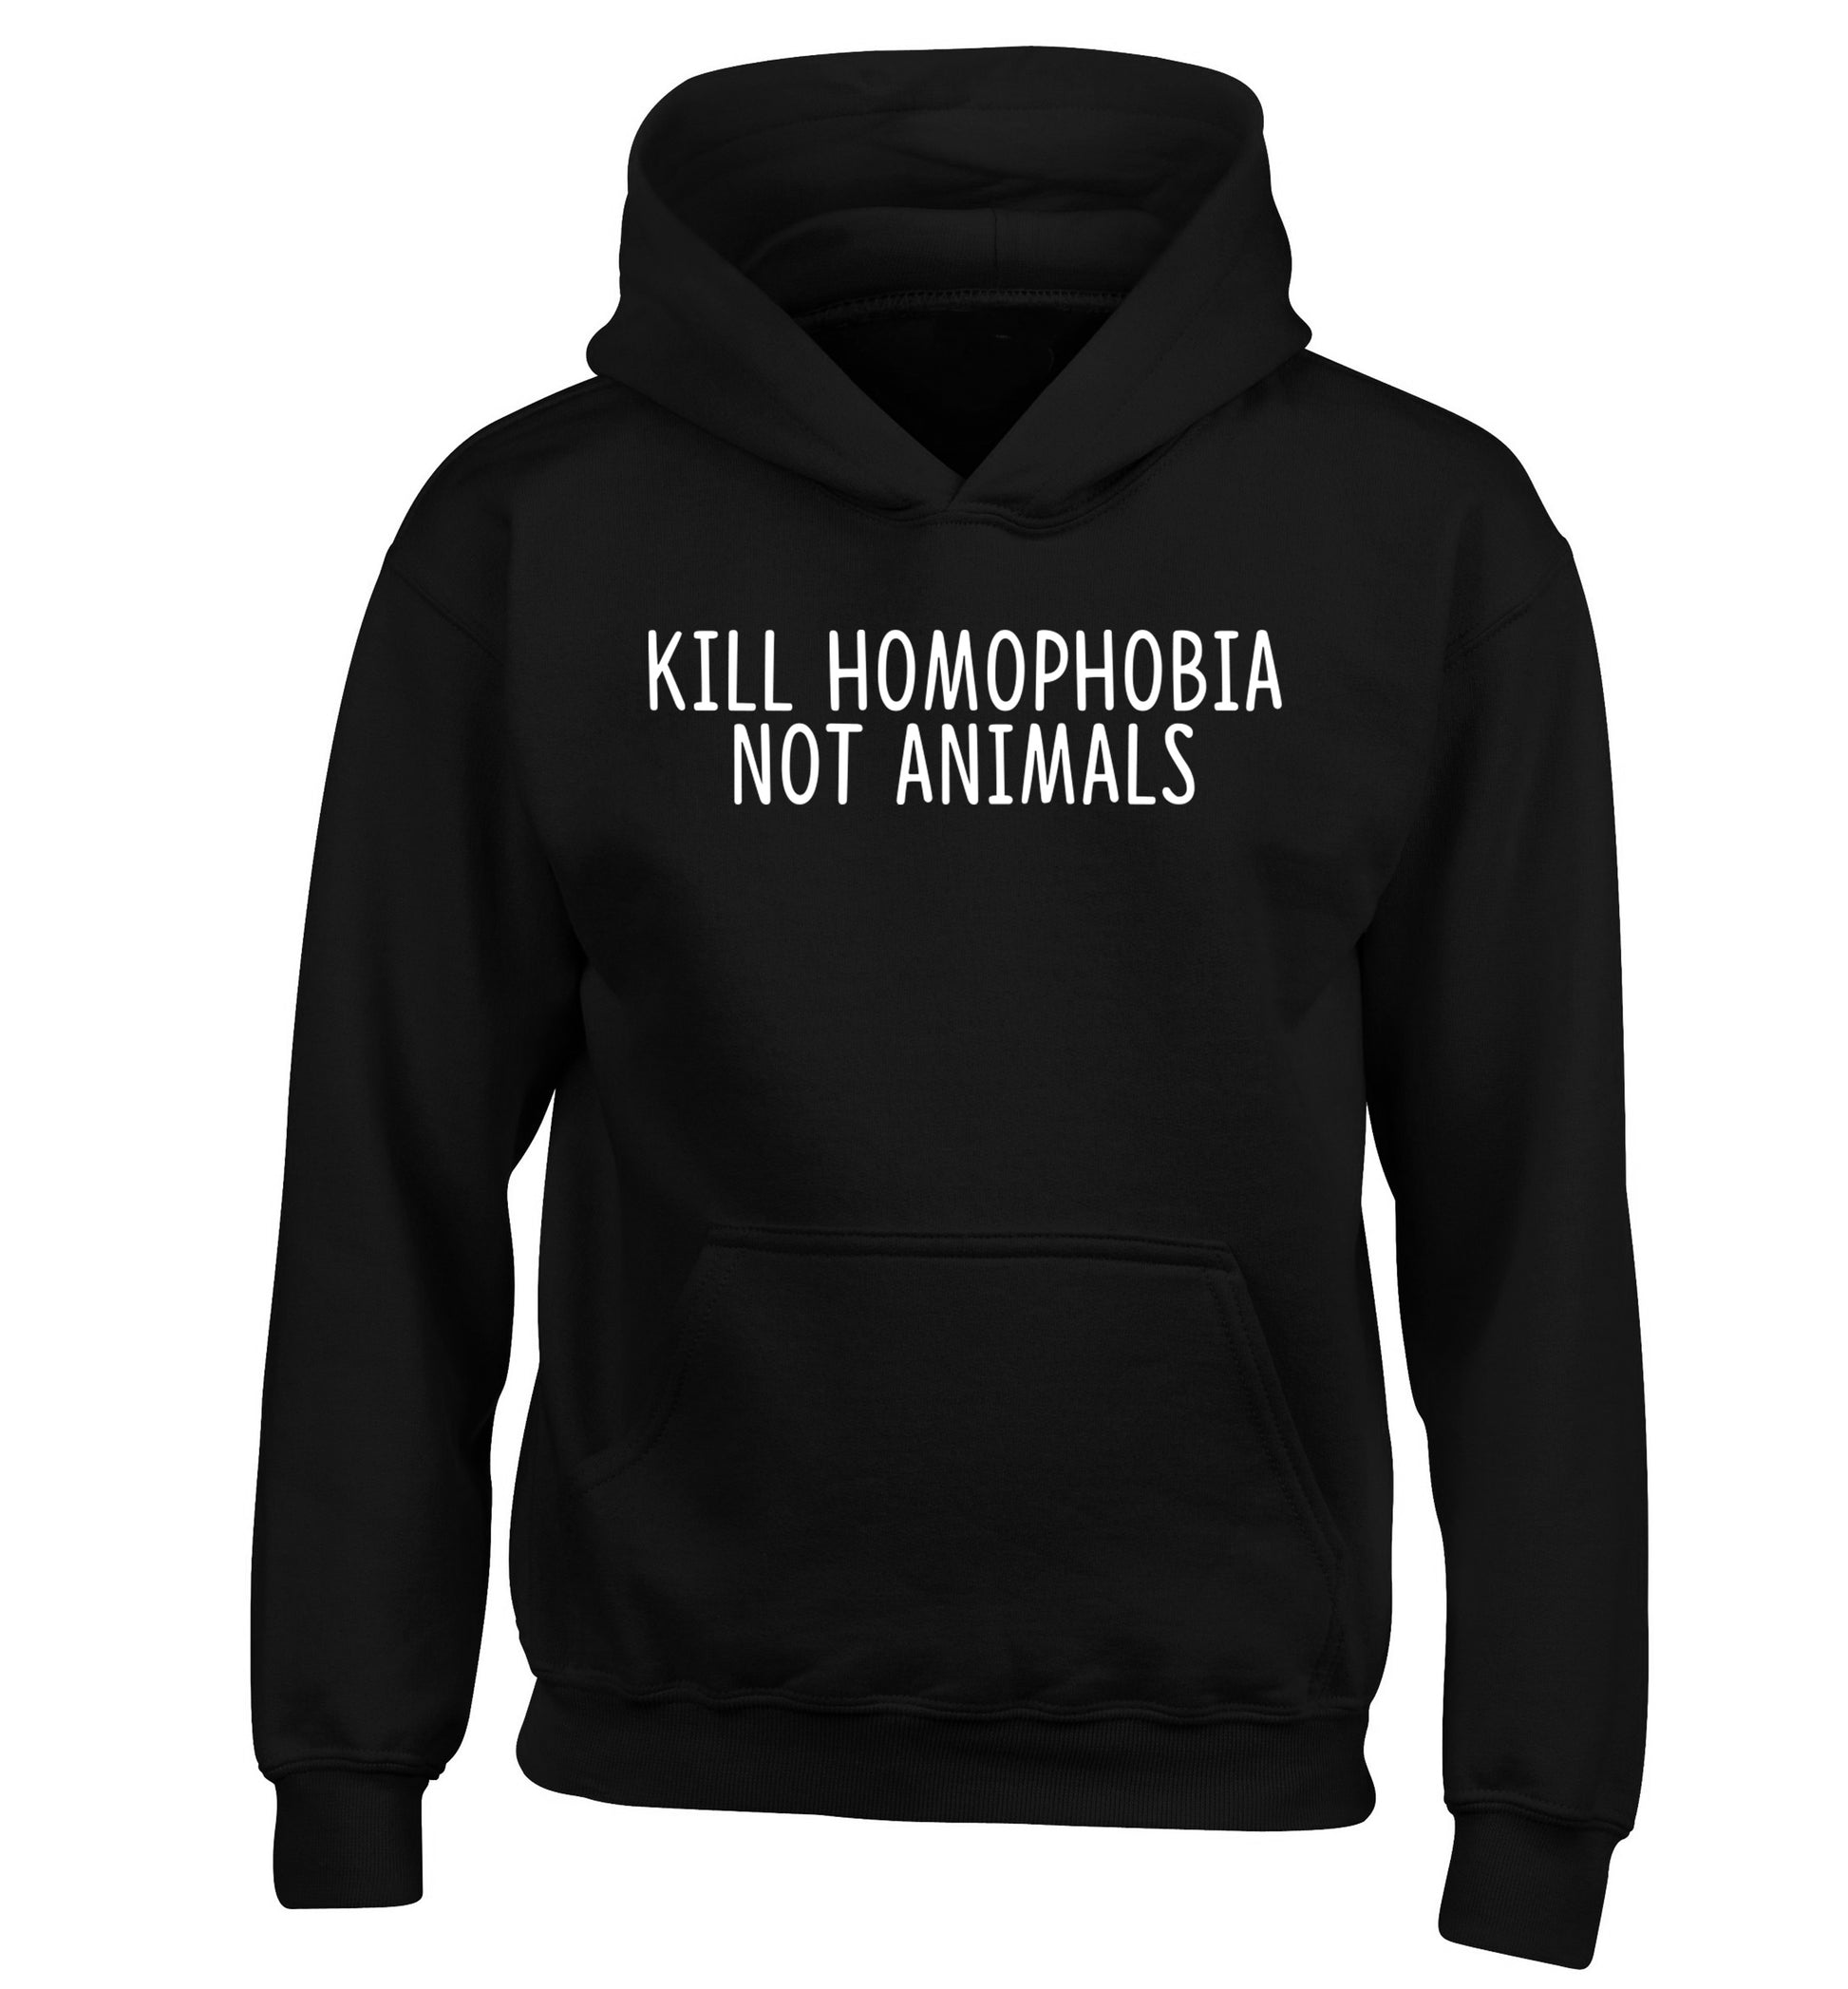 Kill Homophobia Not Animals children's black hoodie 12-13 Years